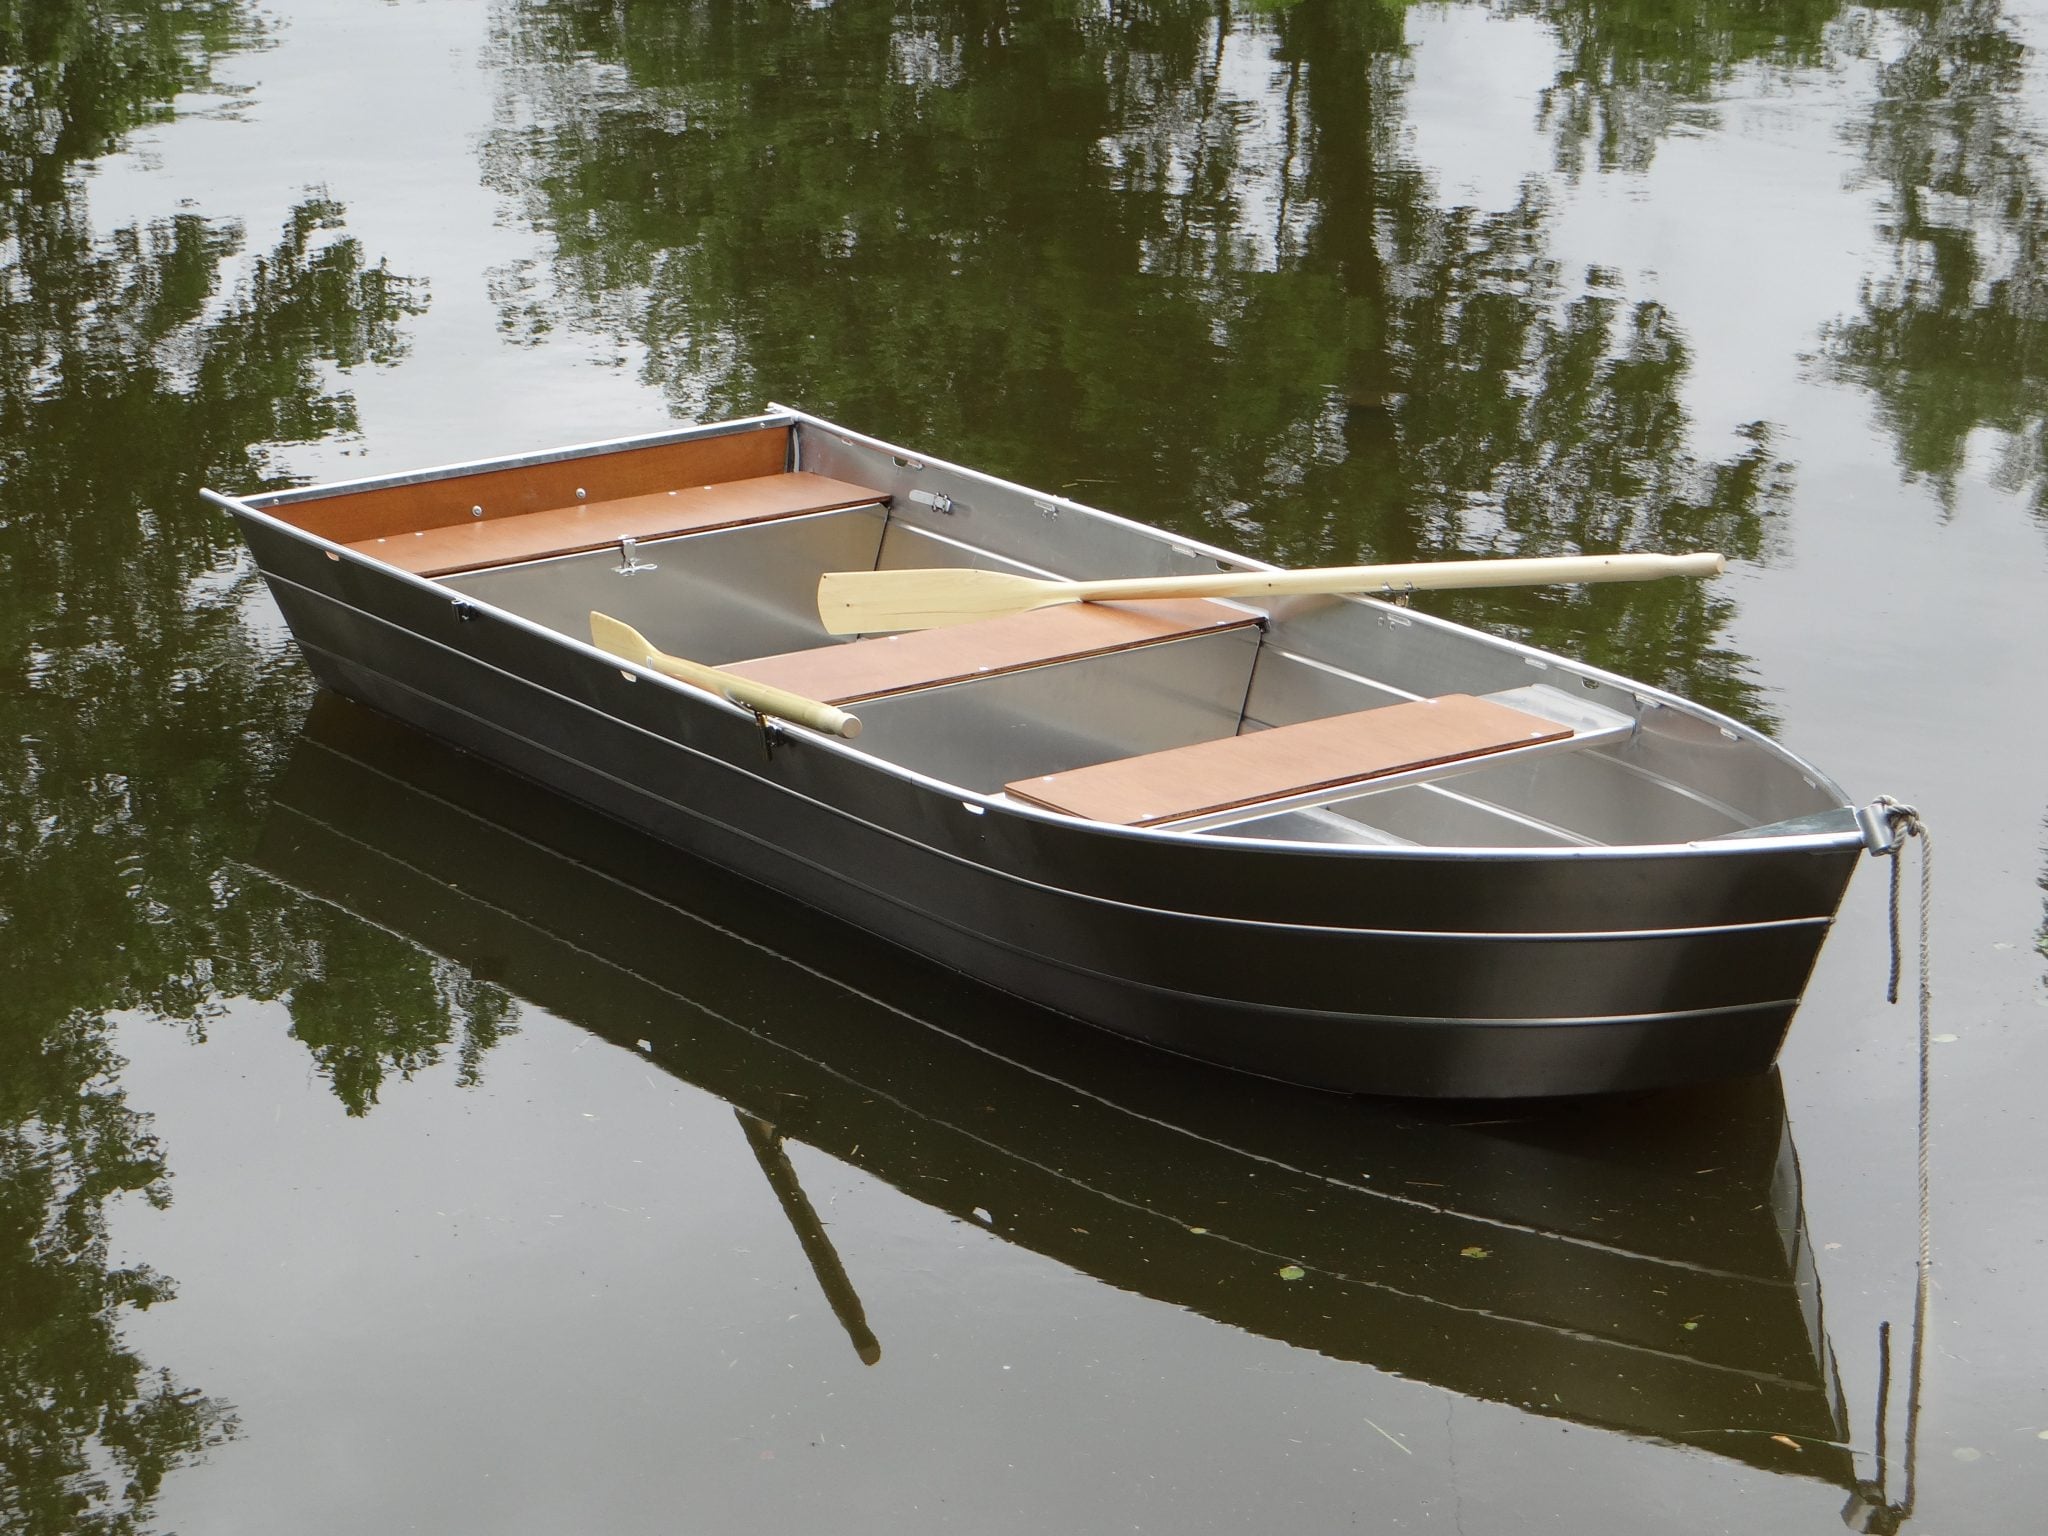 Fischerboot